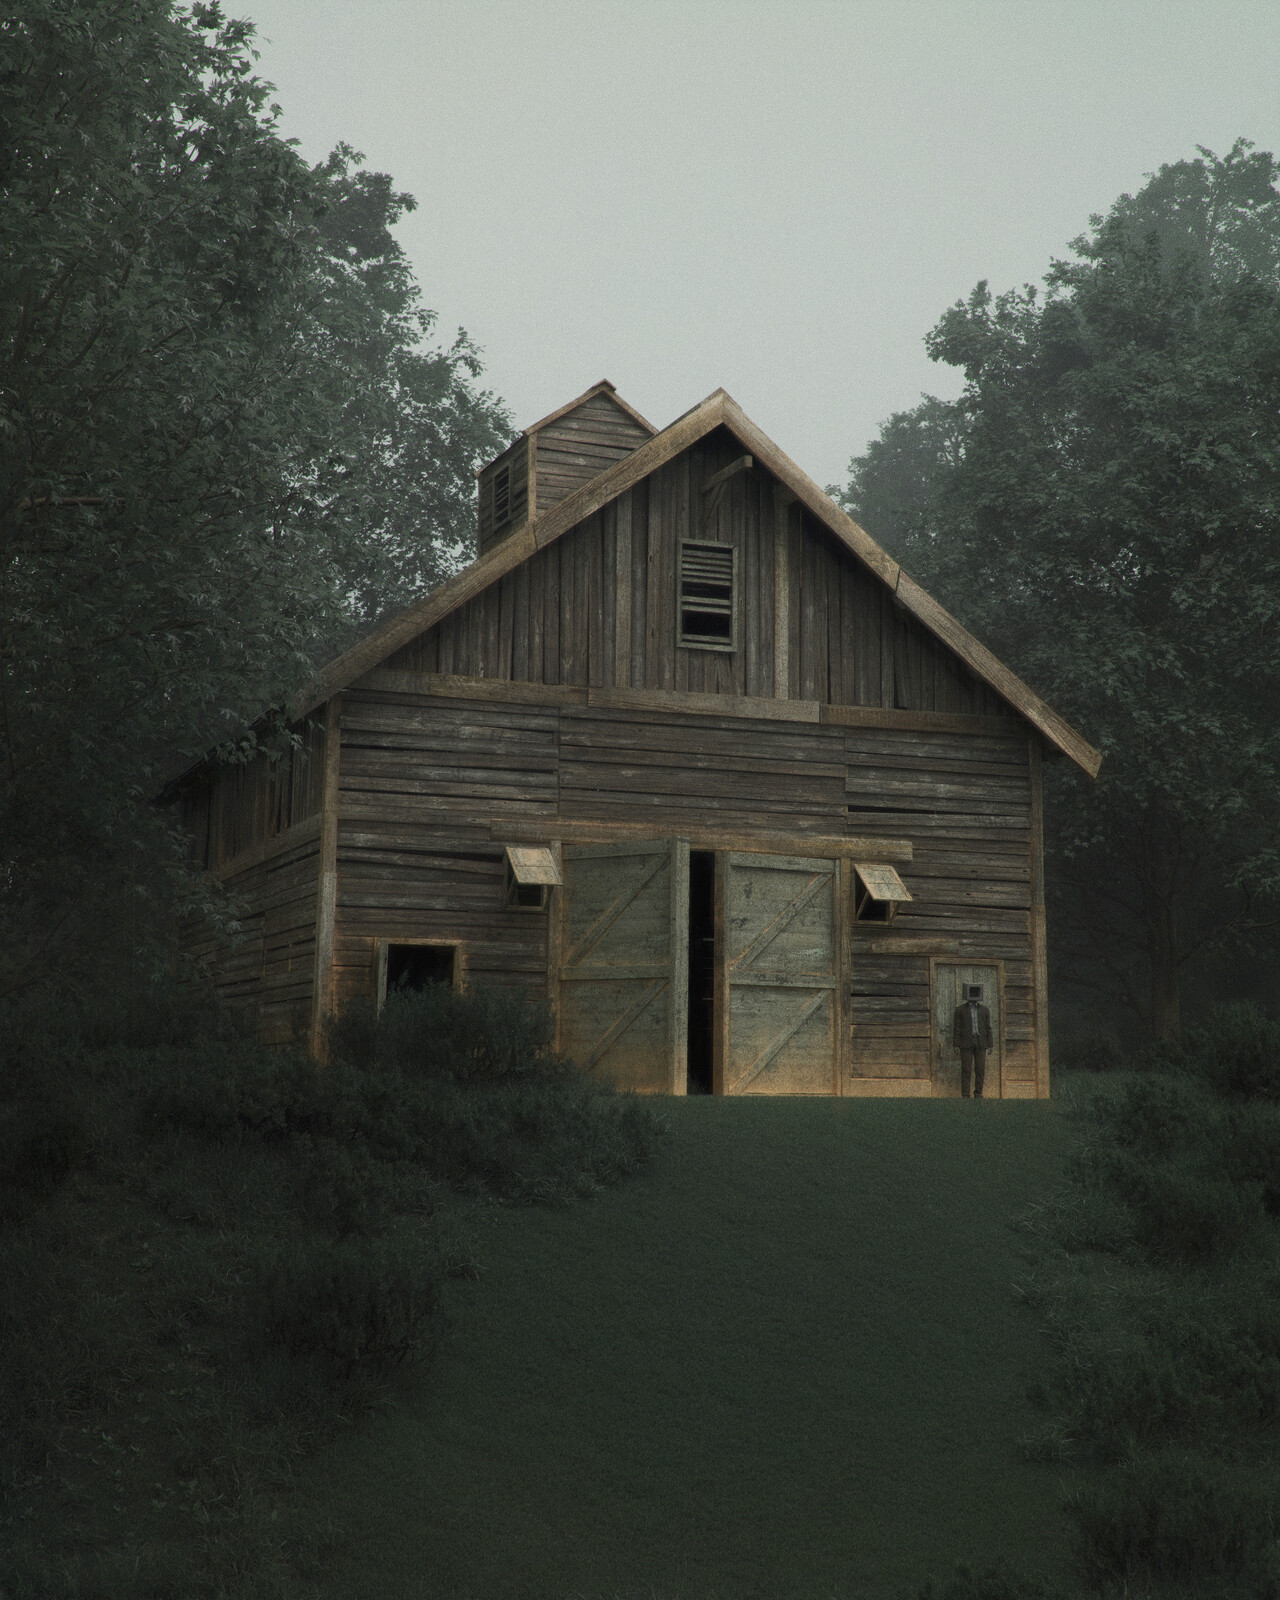 Edward's hilltop barn